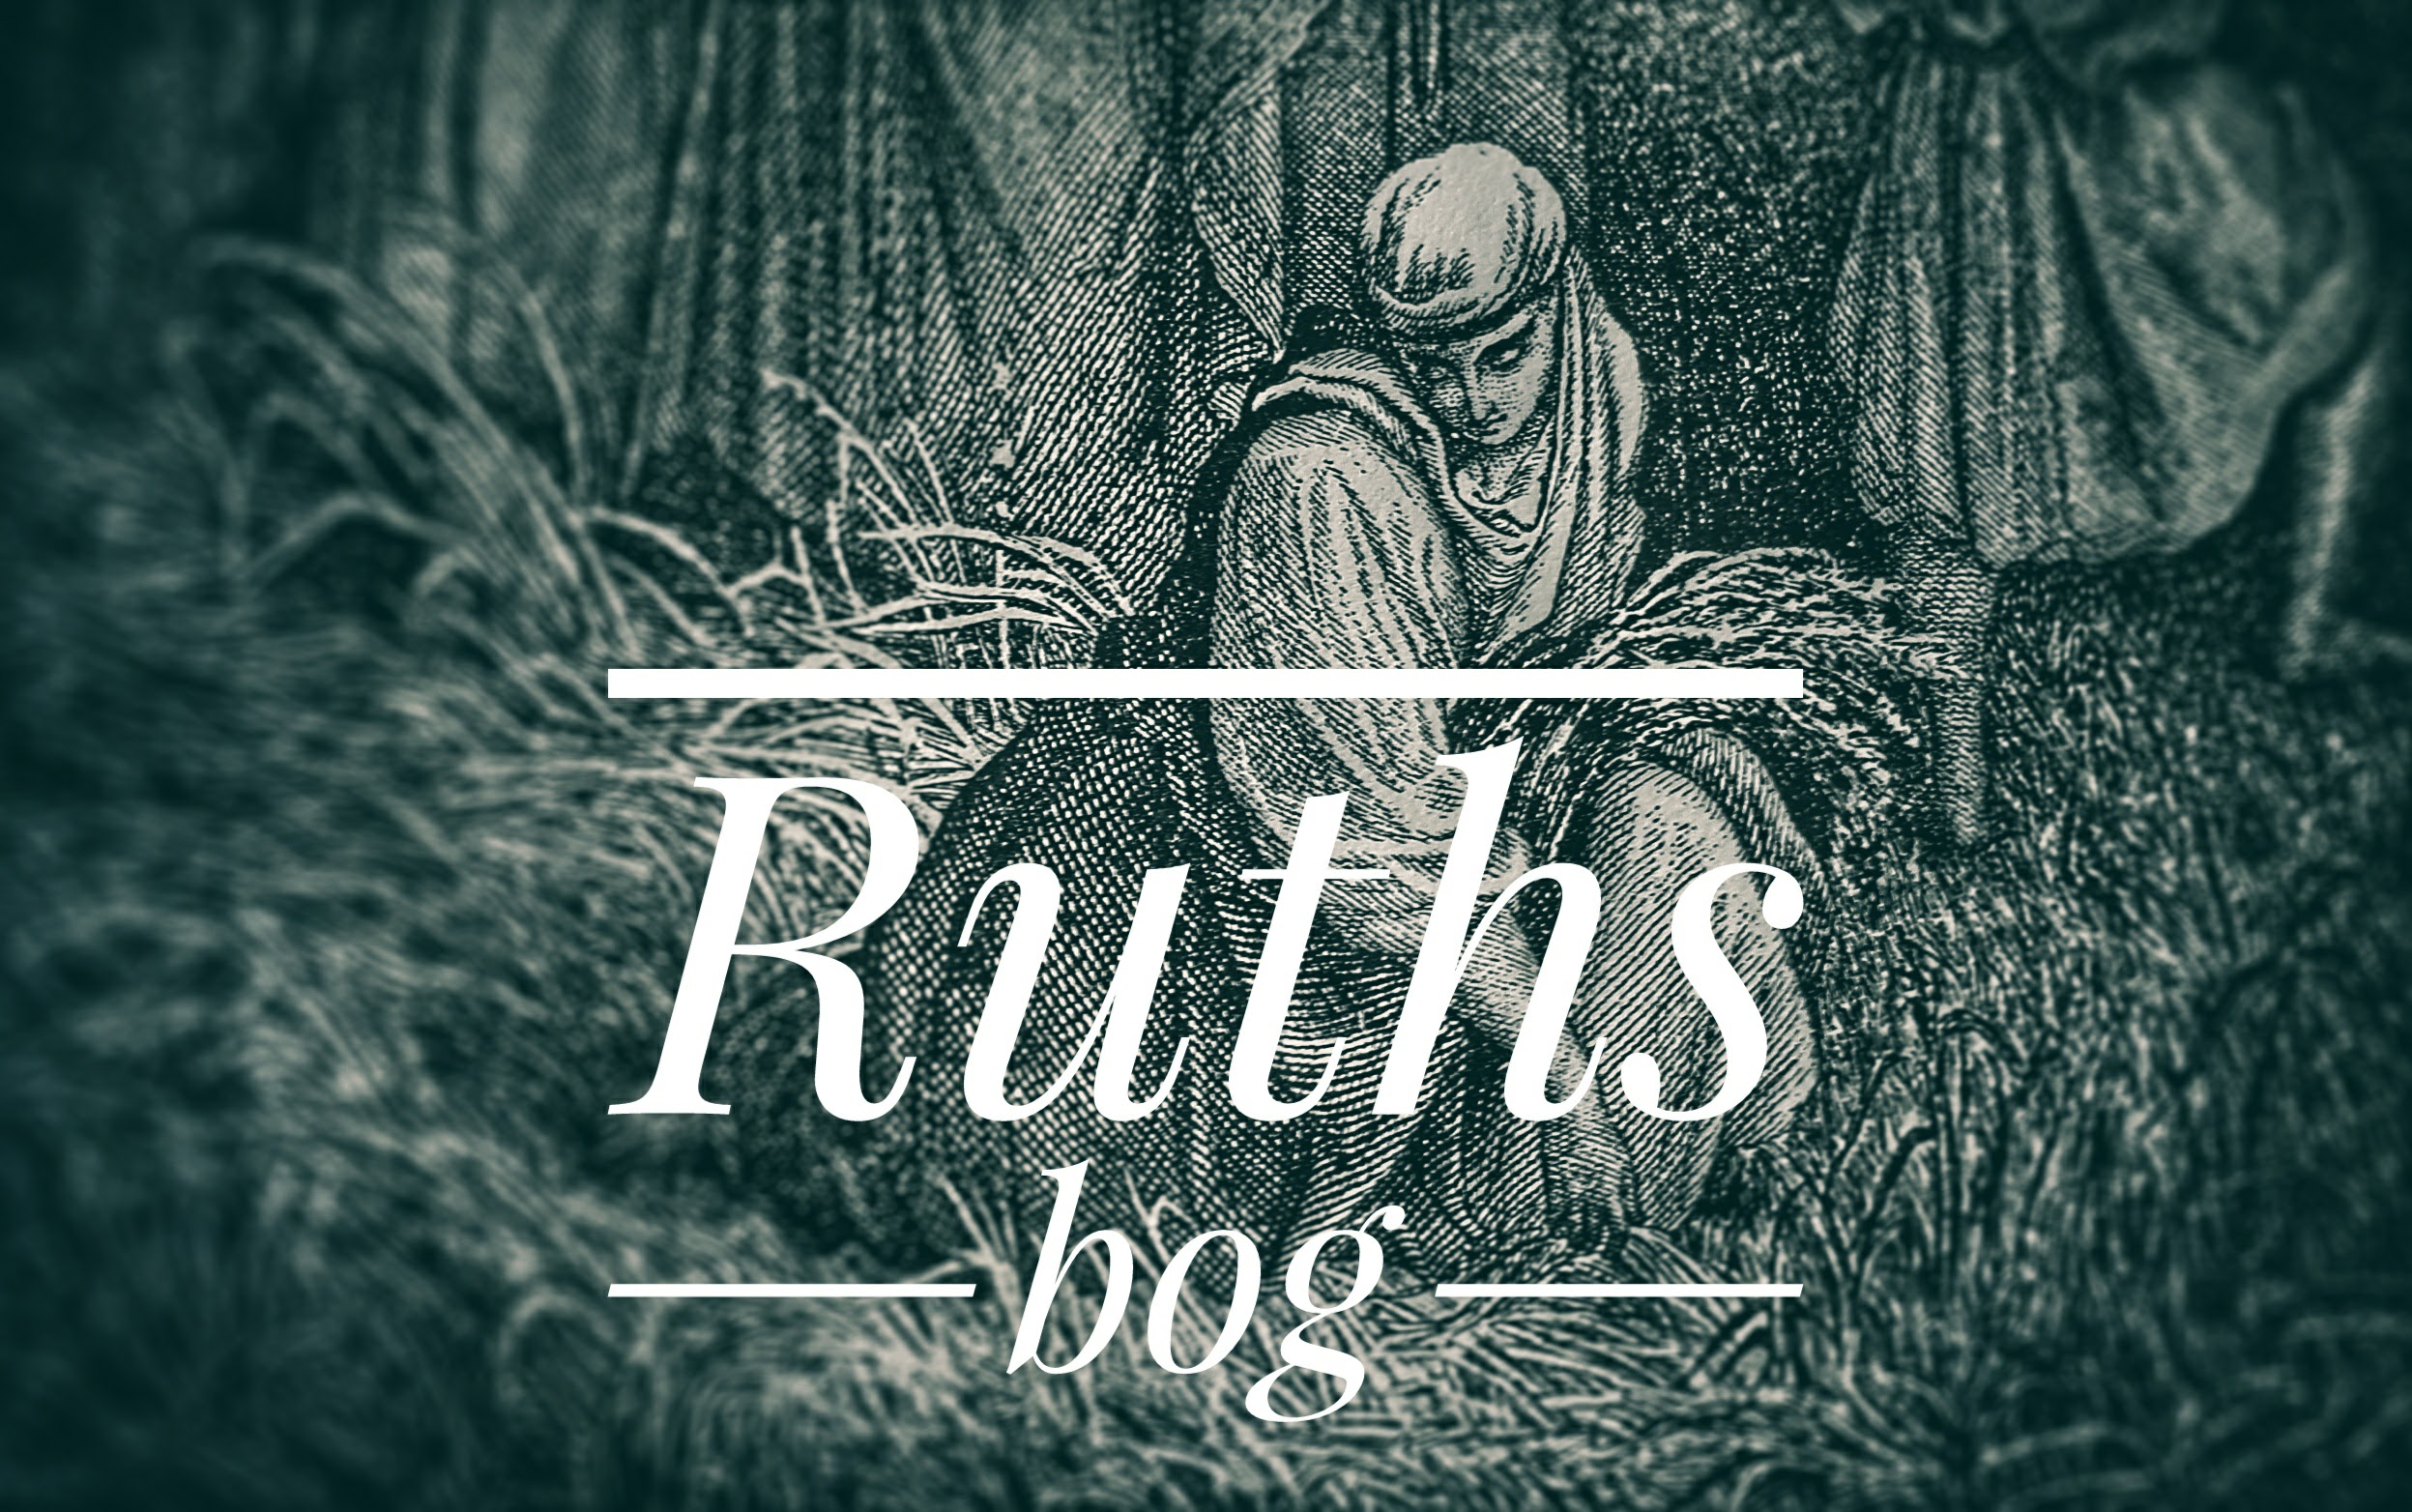 Ruths bog